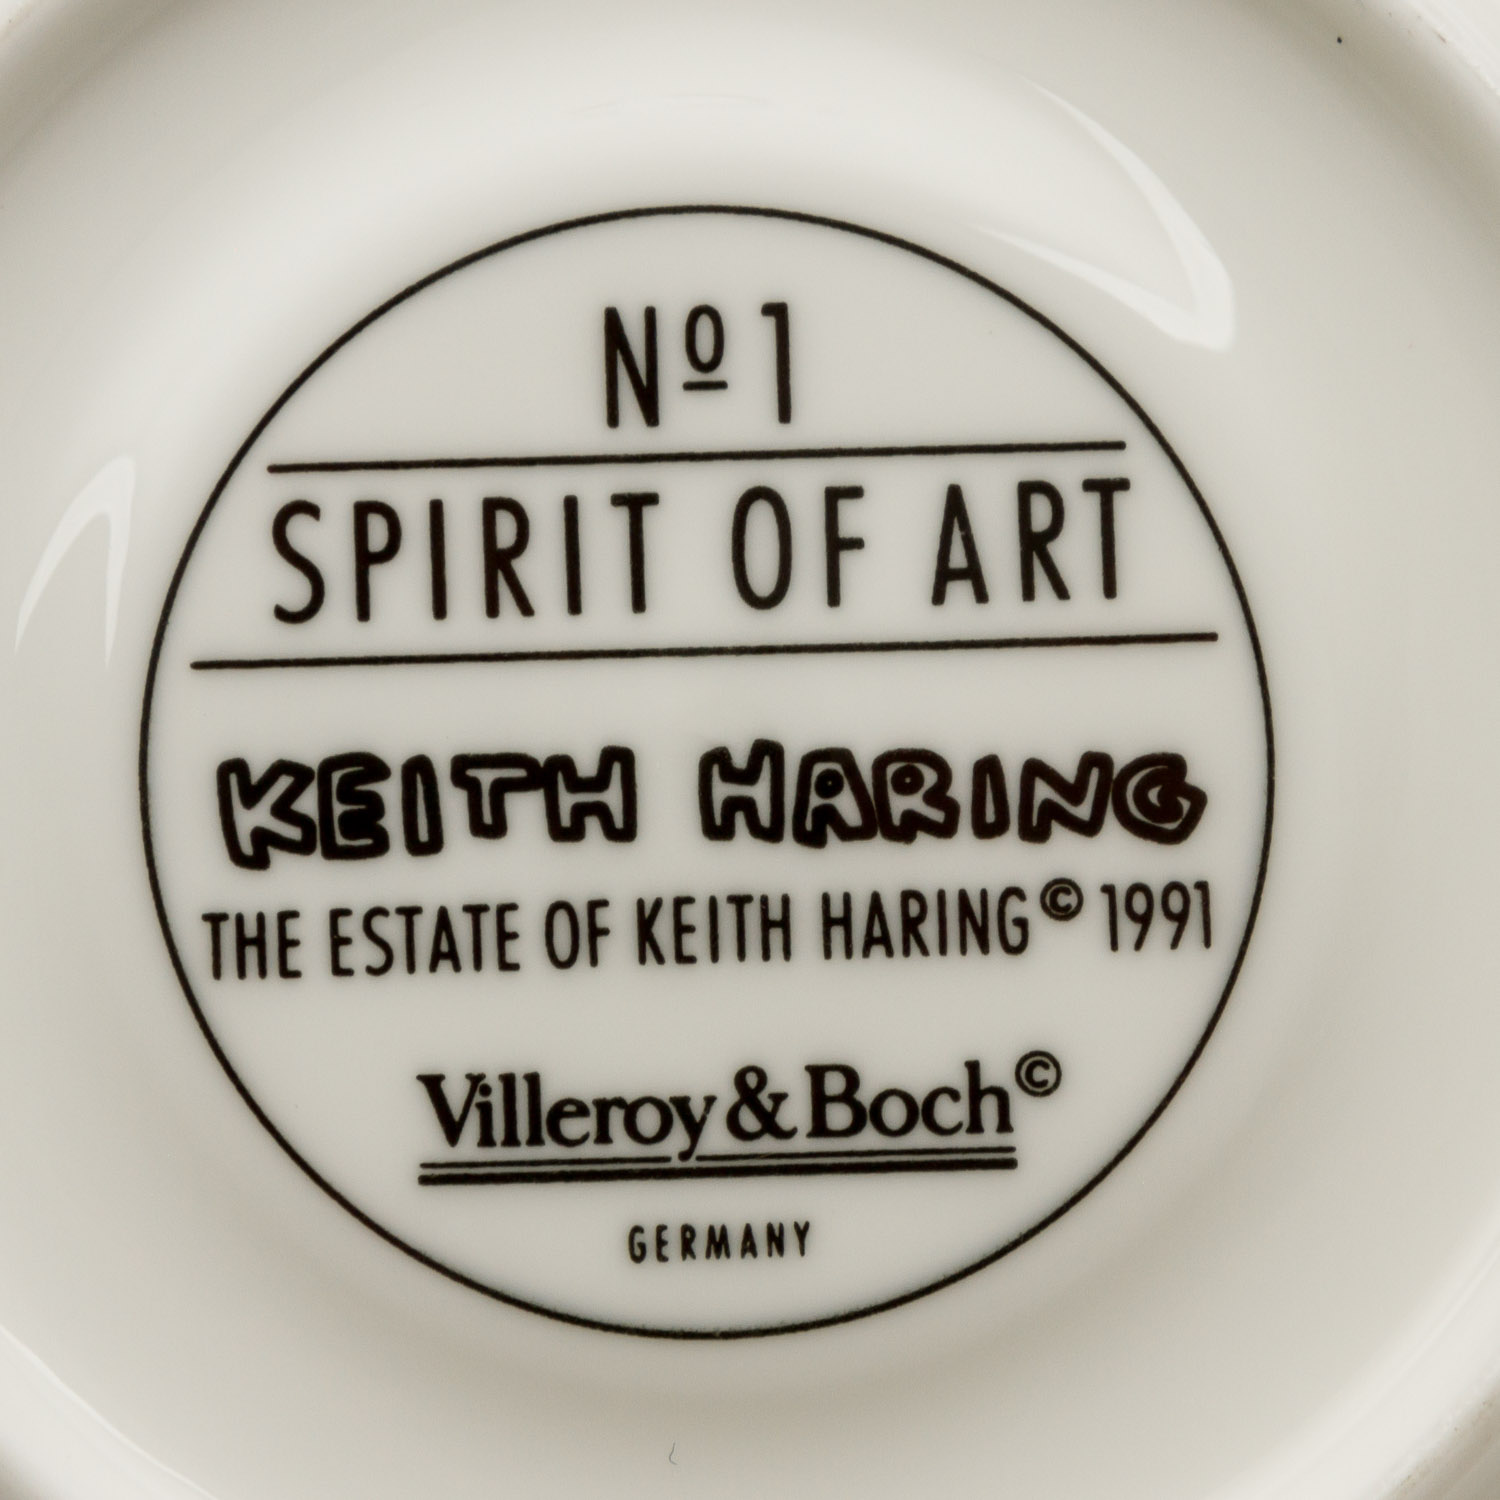 VILLEROY&BOCH Kaffeeservice für 6 Personen "Spirit Of Art No 1", 20. Jh.KEITH HARING für VILLEROY& - Image 5 of 5